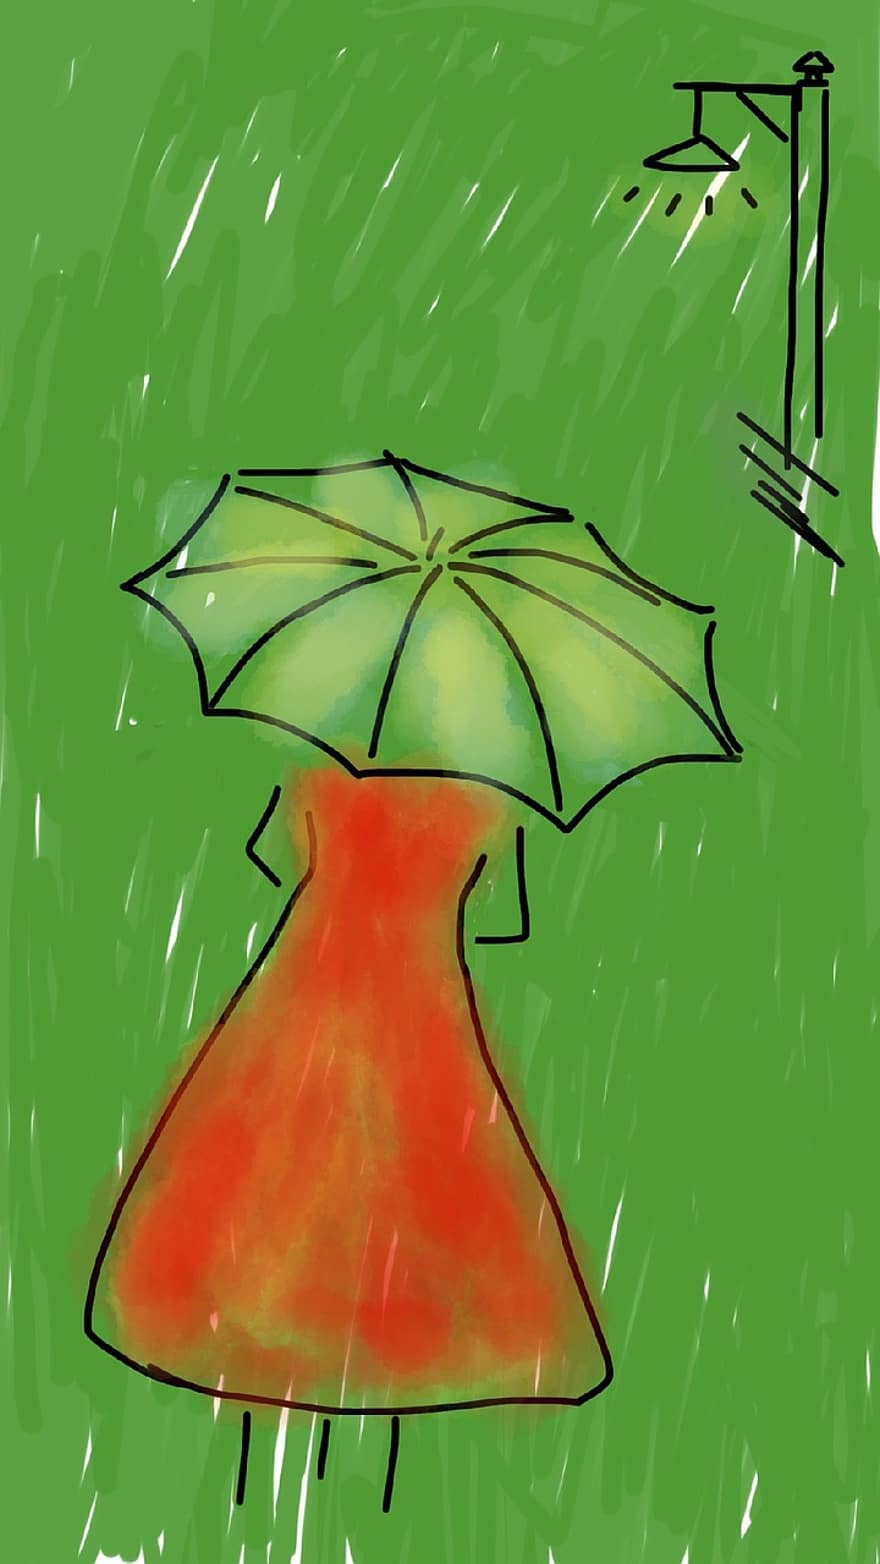 Frau, Regenschirm, Regen, regnerisch, rotes Kleid, Straße, Gehen, weiblich, jung, regnet, Grün